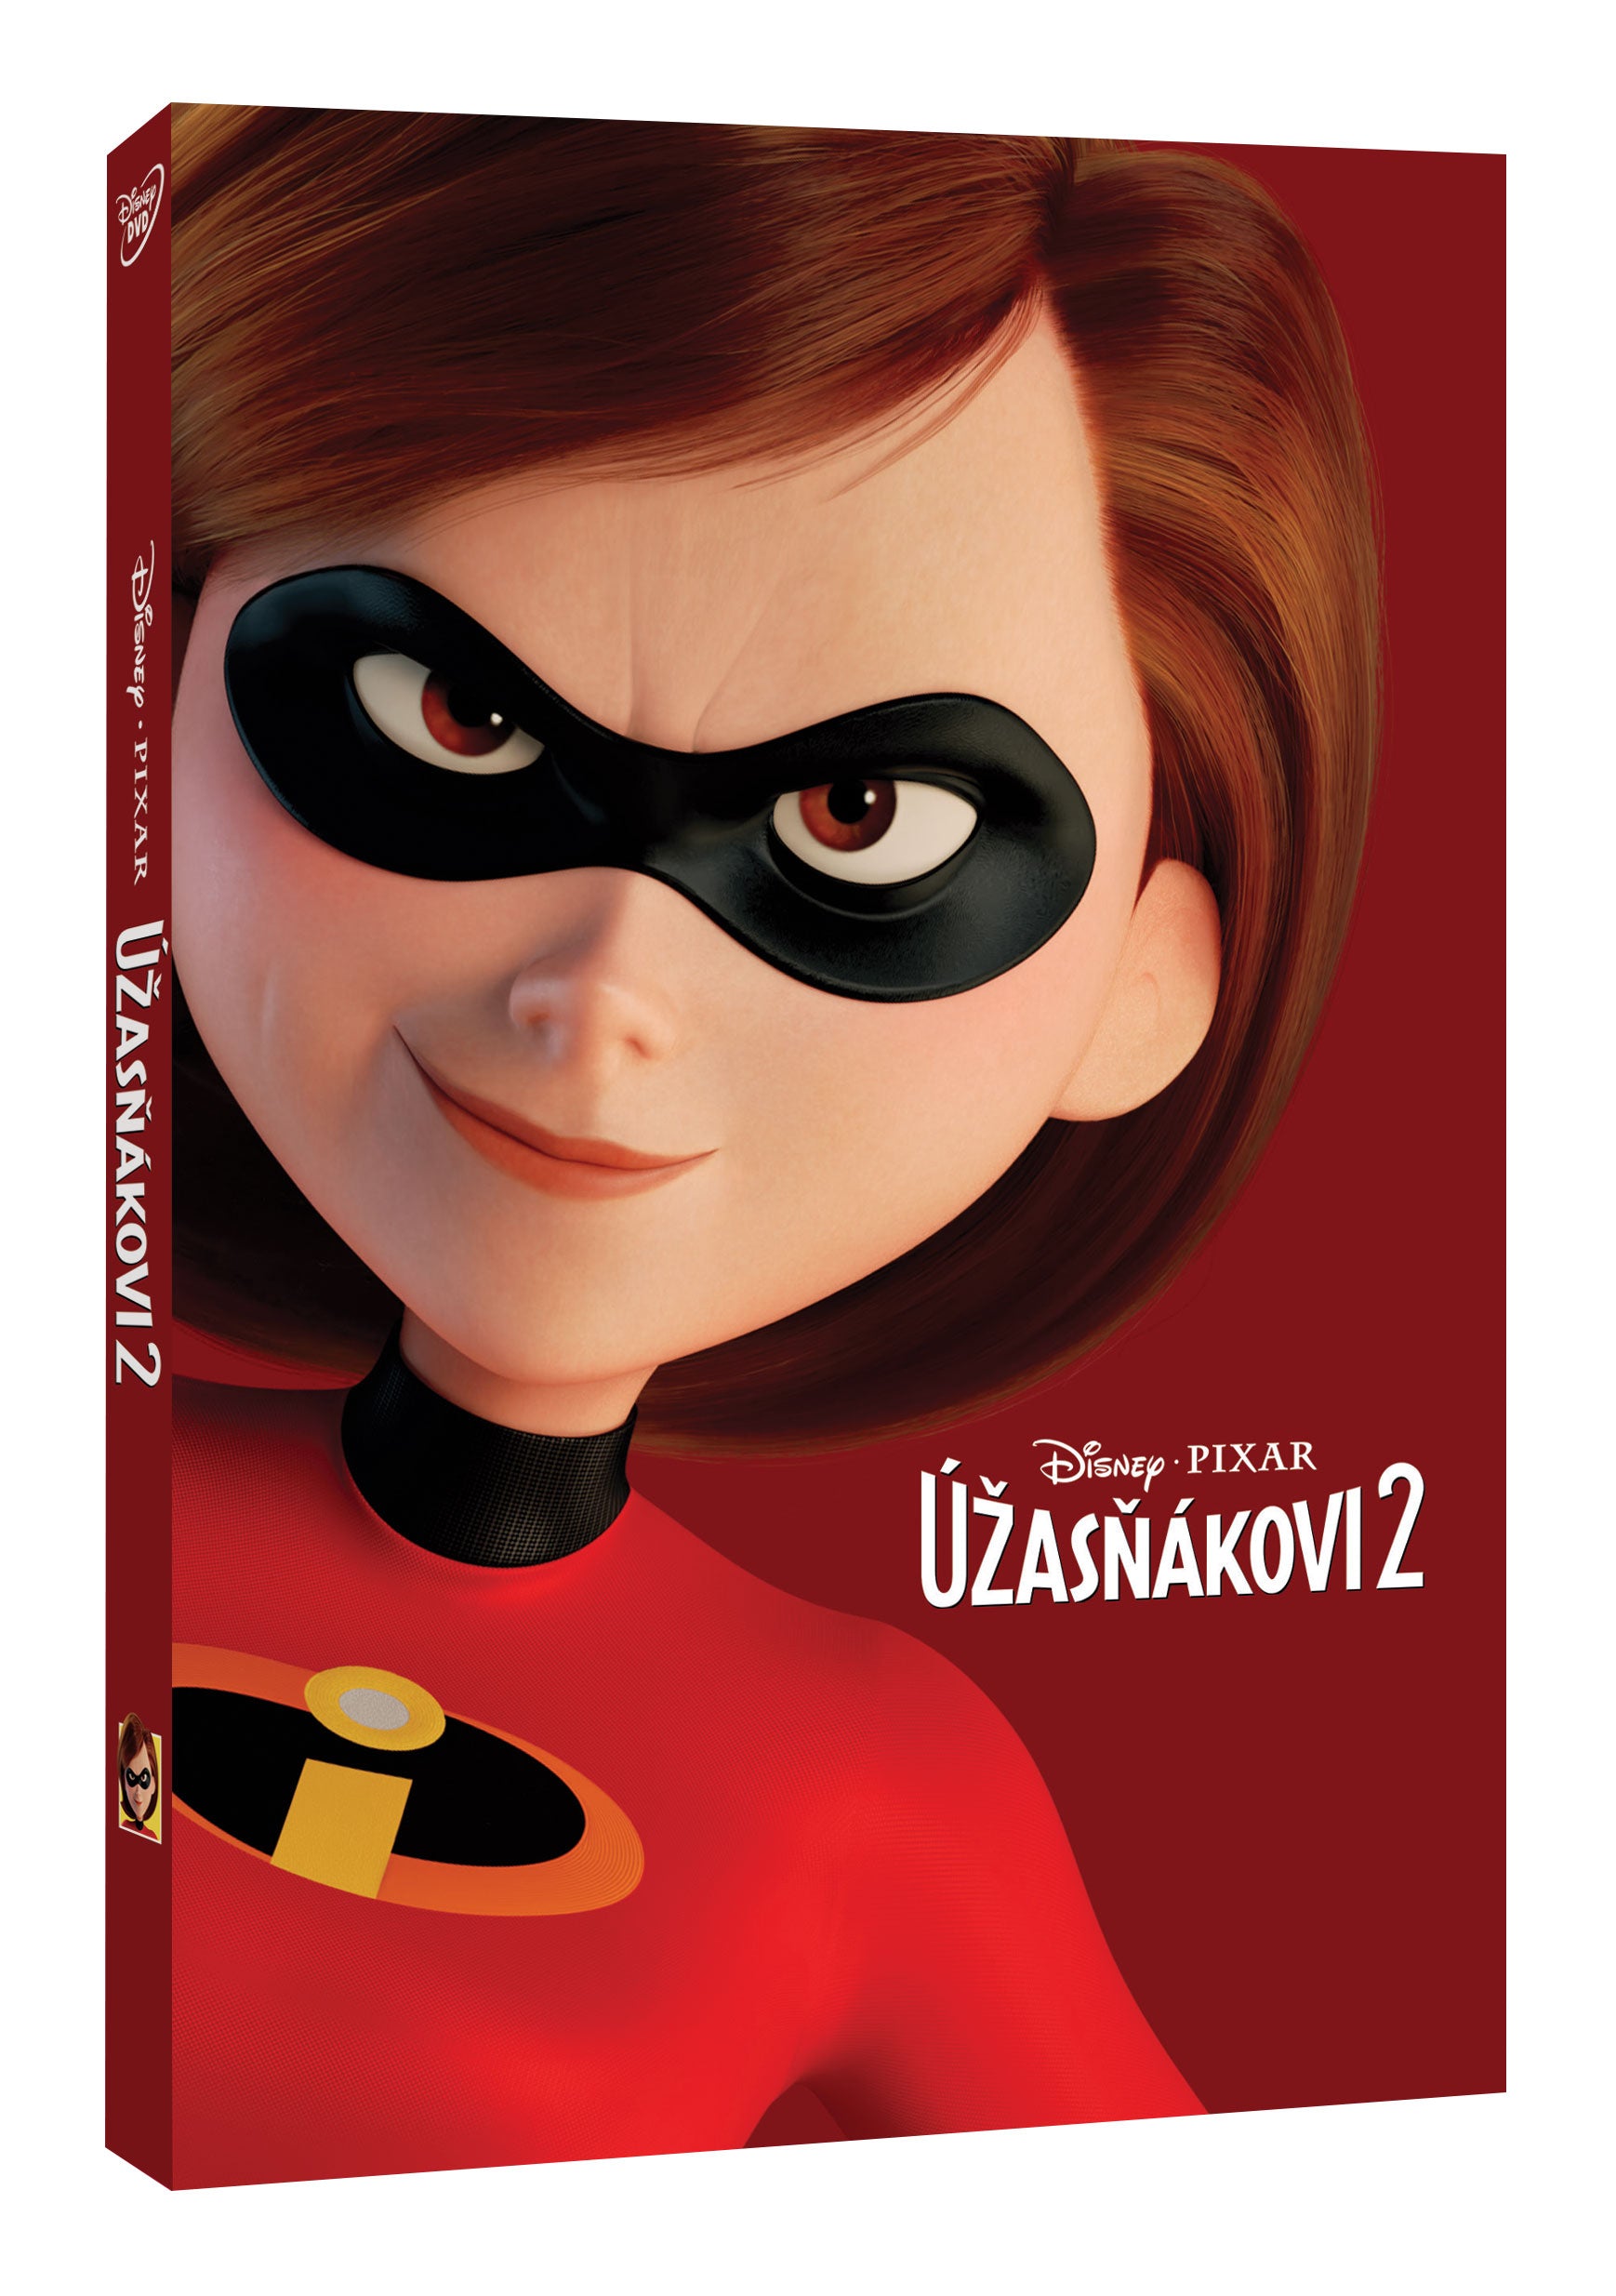 Uzasnakovi 2 DVD - Disney Pixar edice / Incredibles 2, The